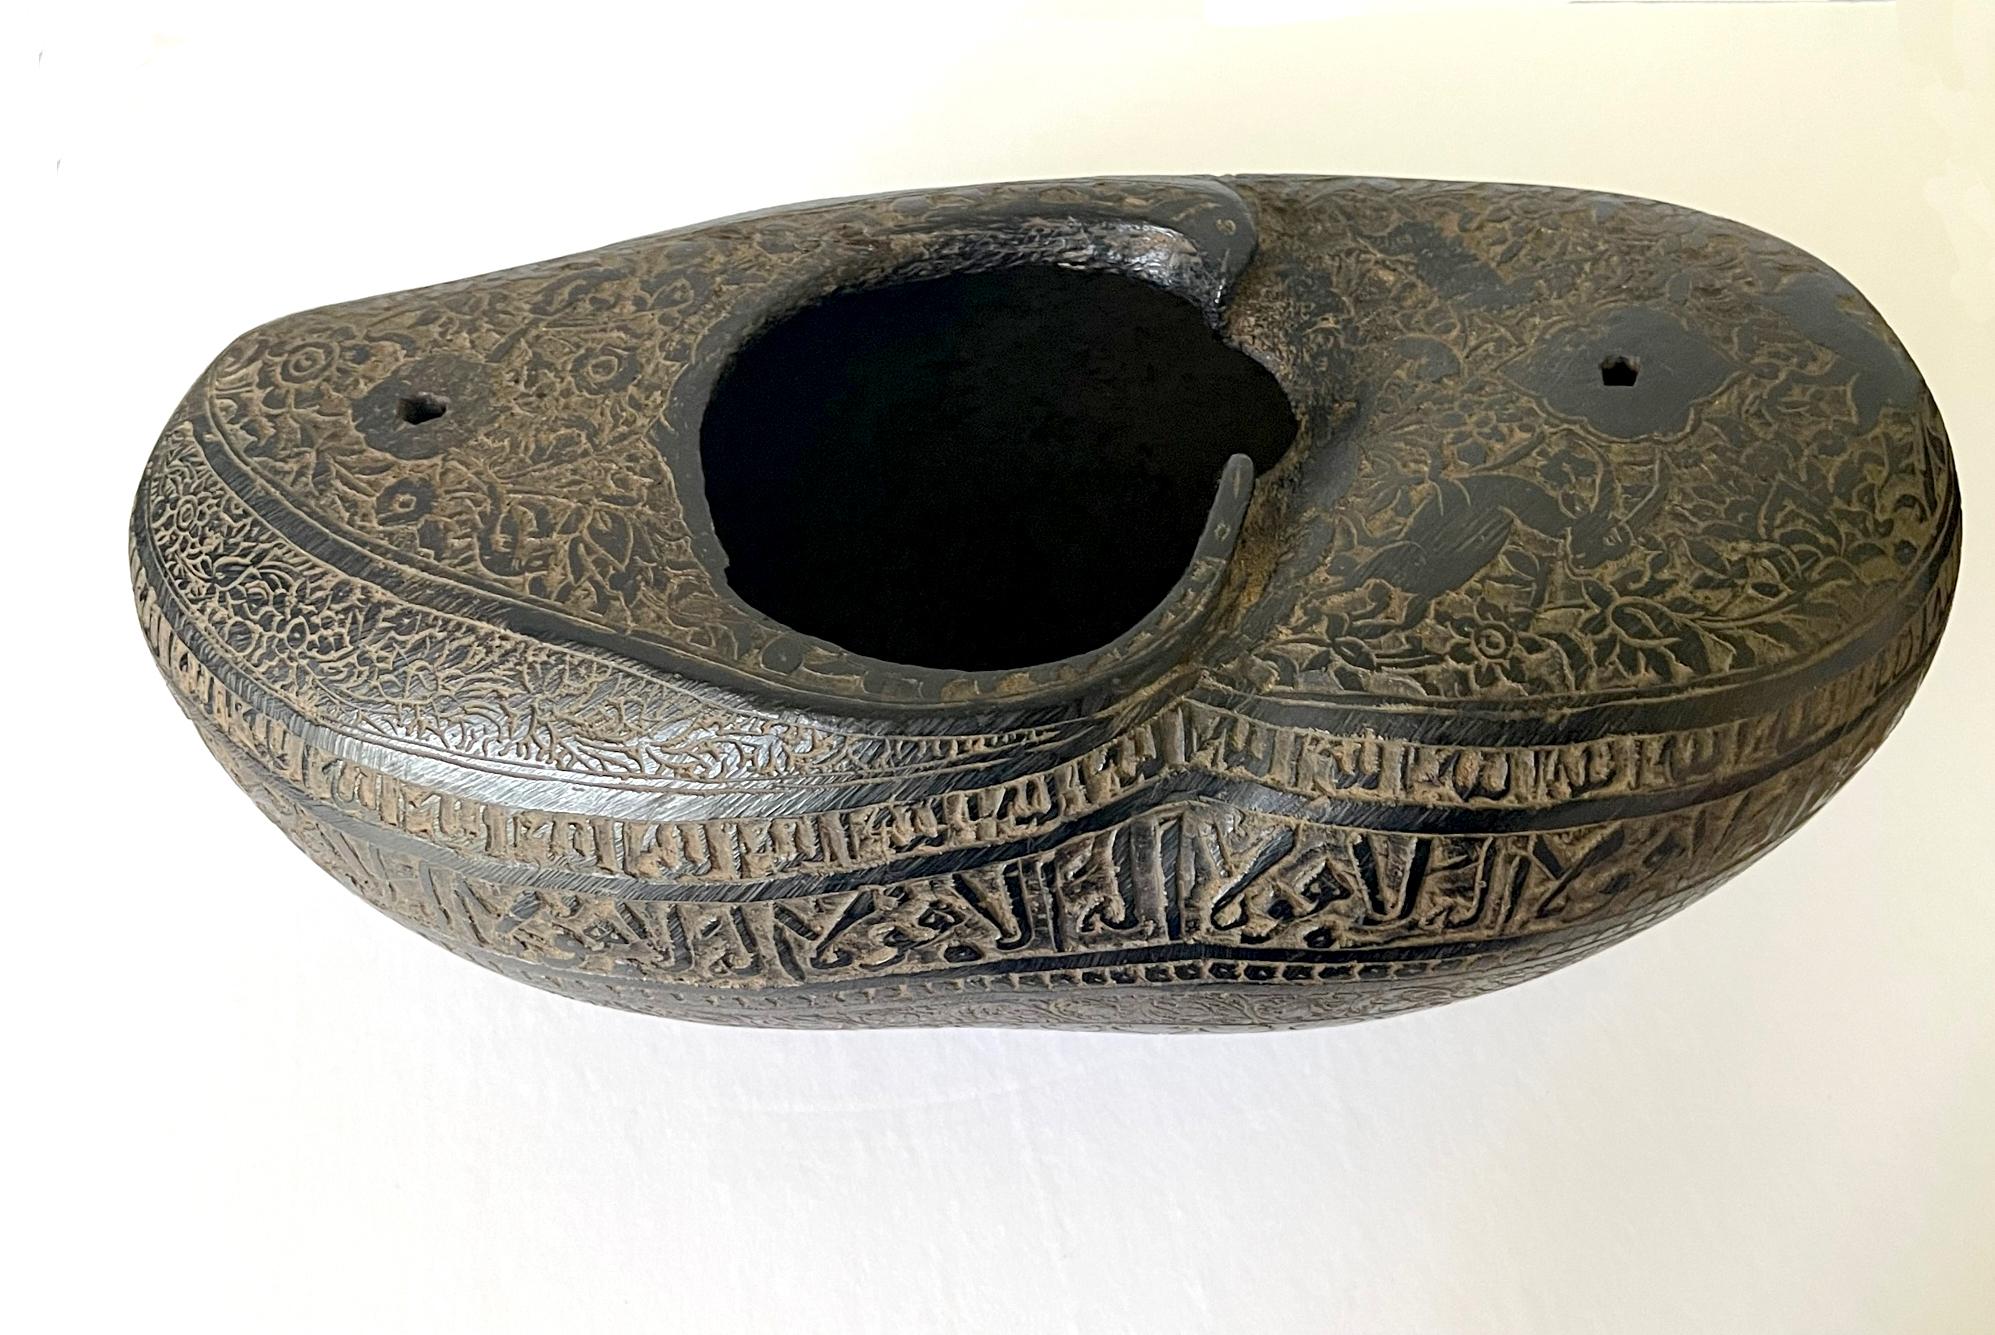 Eine feine Kashkul, geschnitzt aus der Hälfte der riesigen Nussschale von Coco-de-mer, wahrscheinlich aus der persischen Qajar-Dynastie, ca. 18-19 Jahrhundert. Kashkul ist ein Gefäß, das als Bettelschale bekannt ist und von wandernden Derwischen,